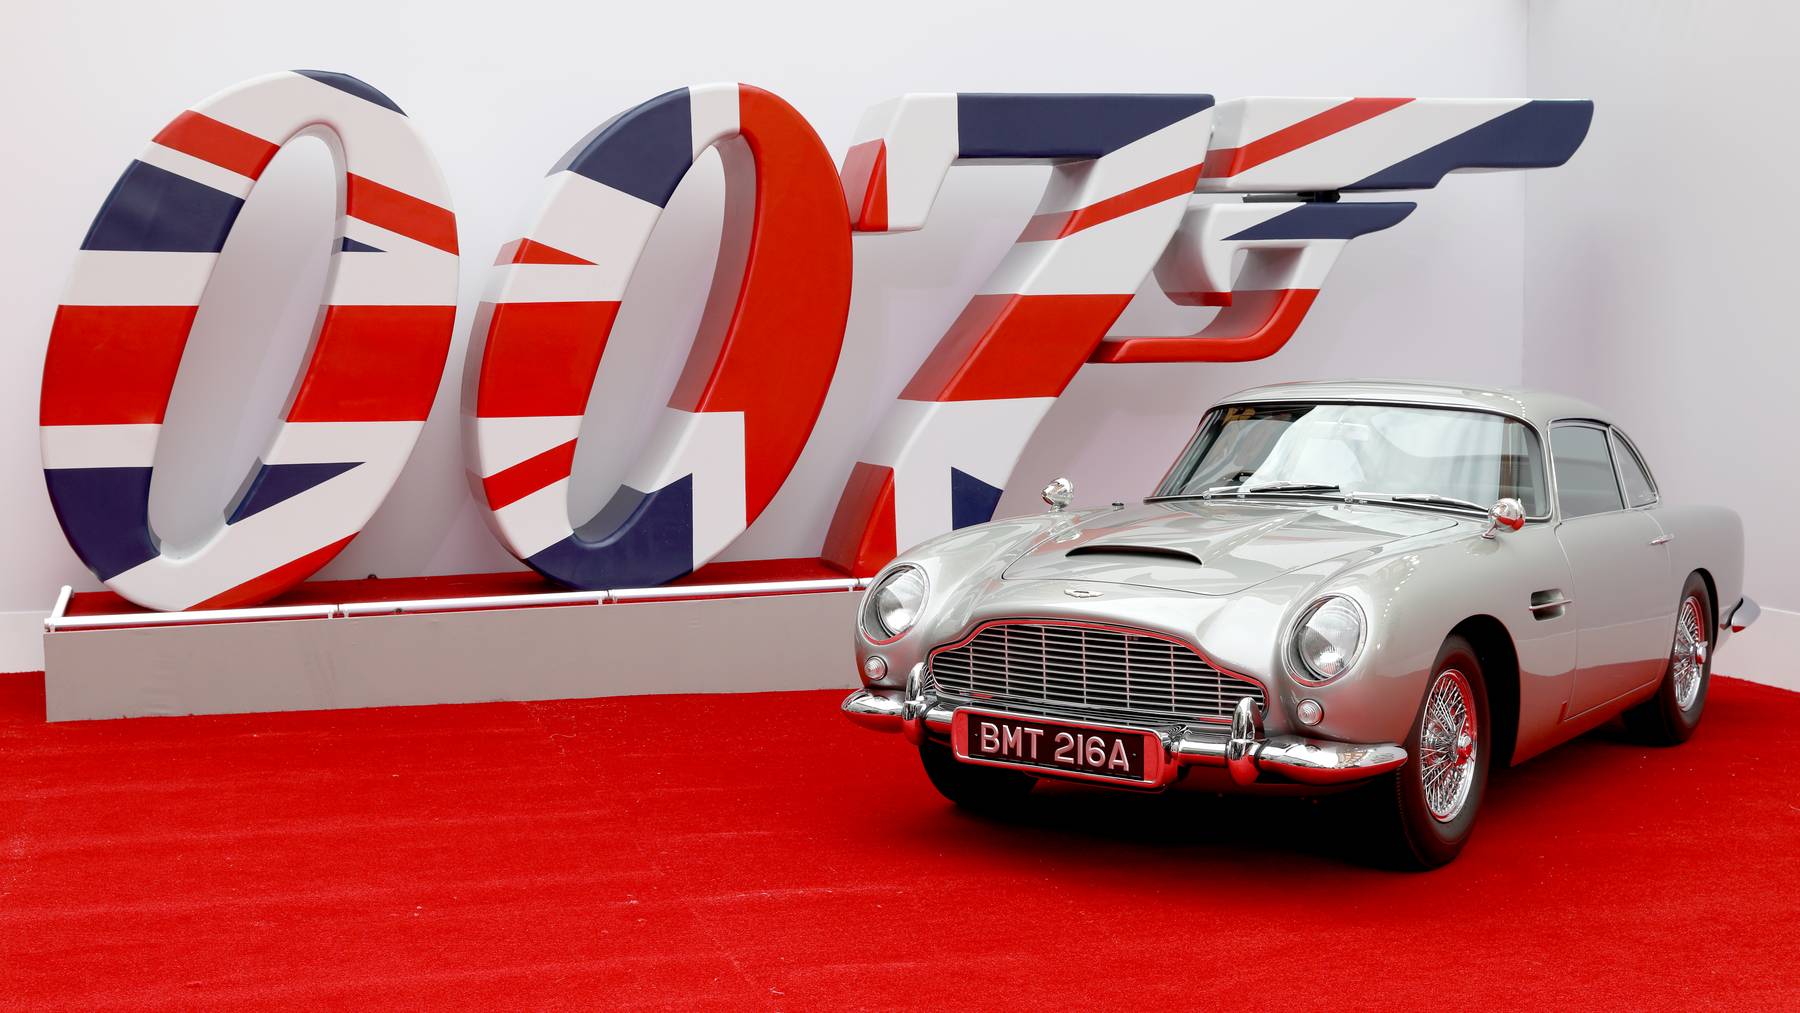 Aston Martin 007 James Bond